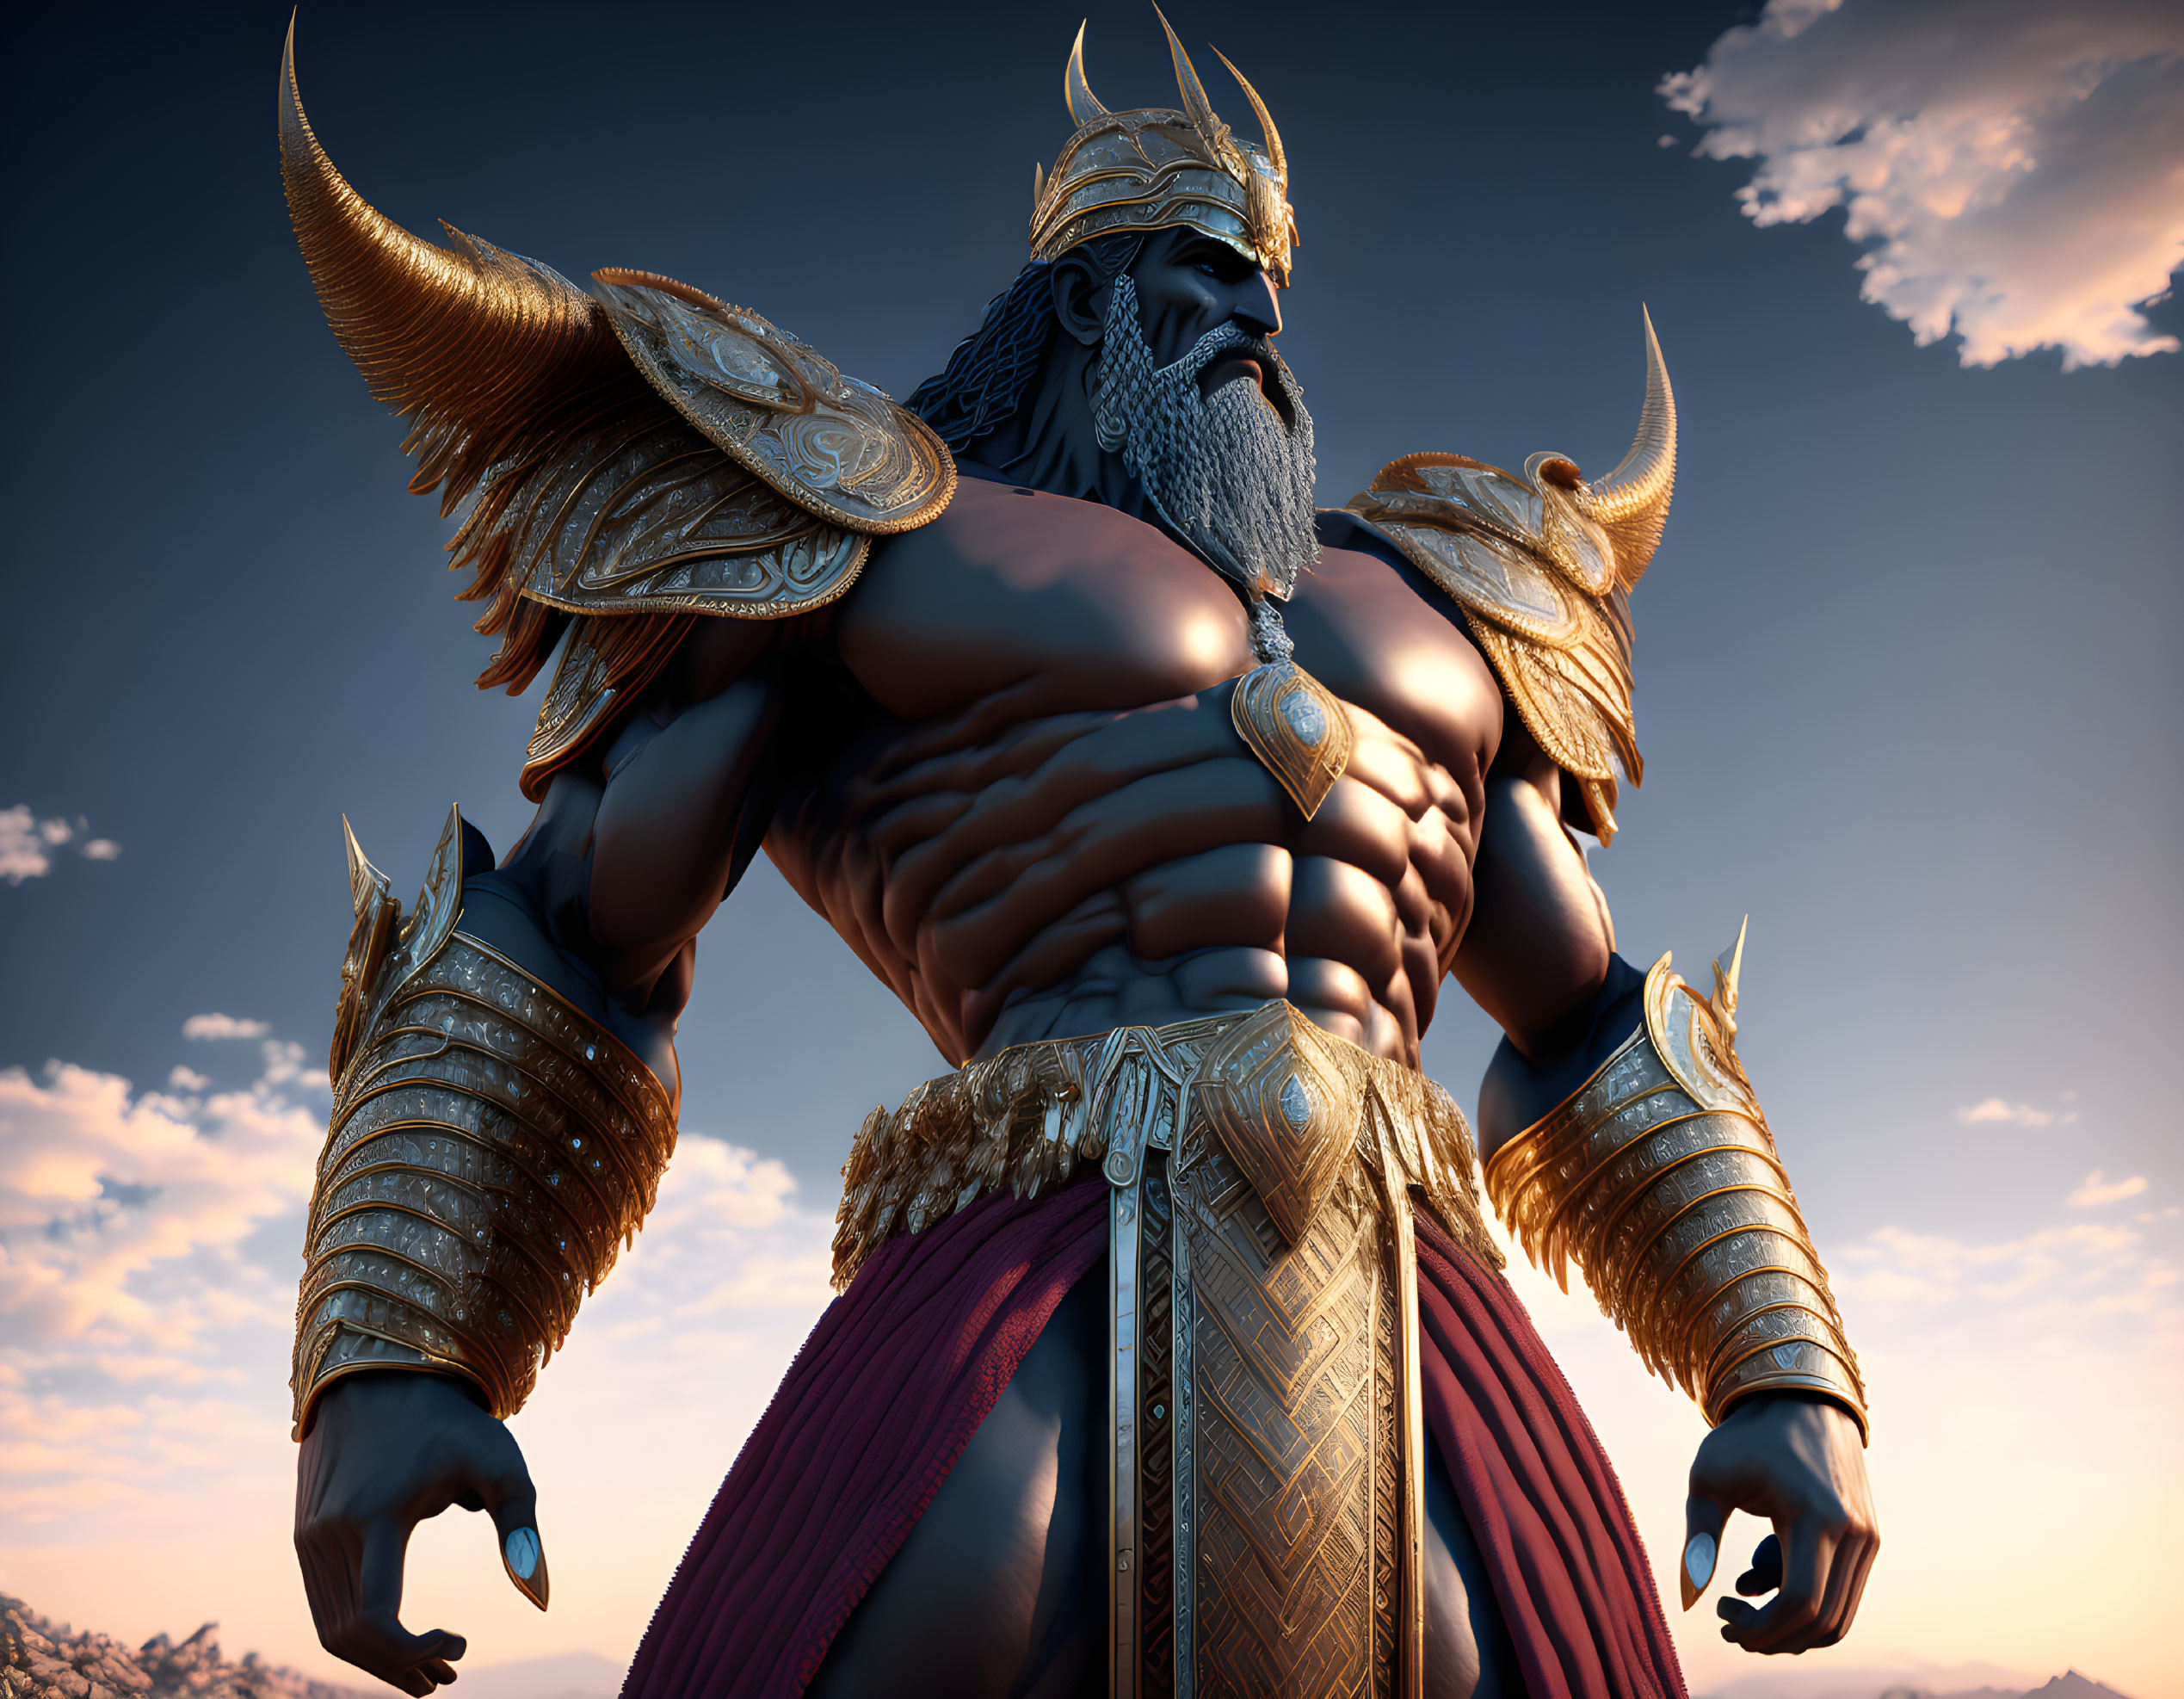 Fantasy warrior in golden horned armor against dramatic sky